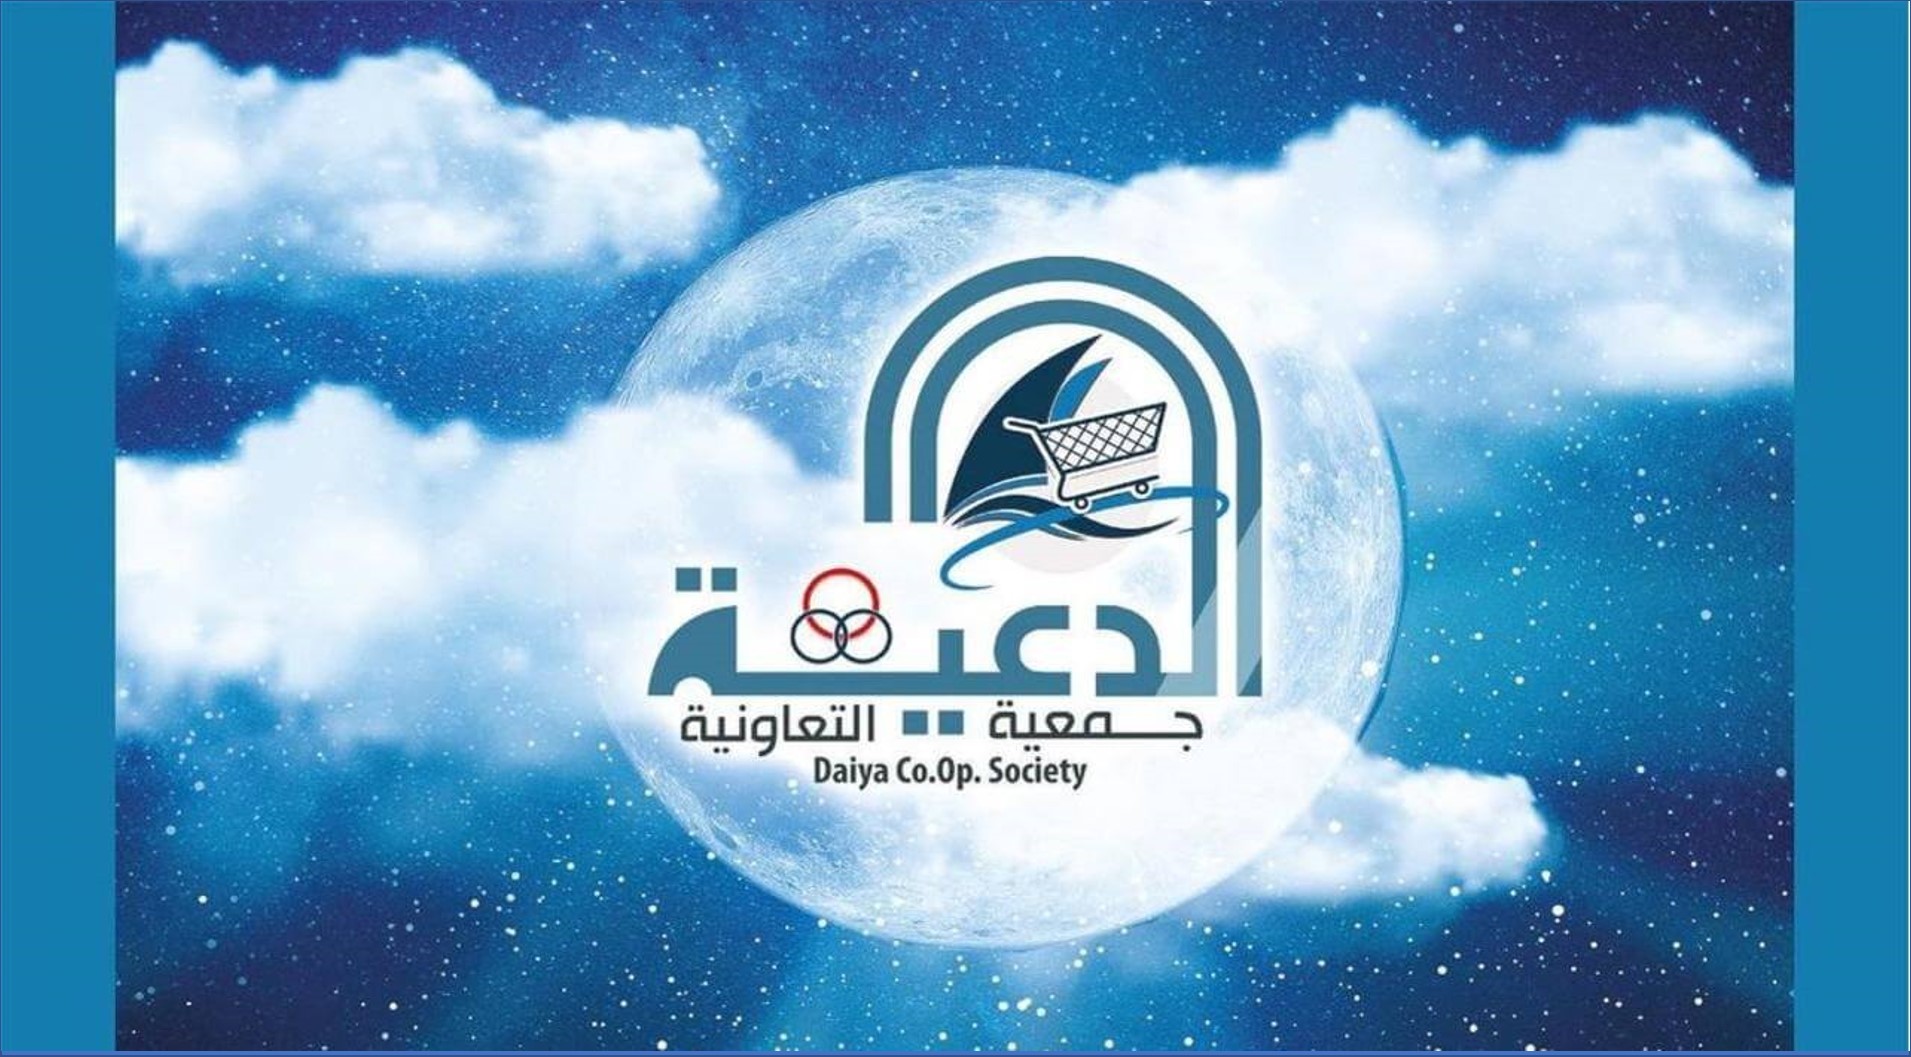 جمعية الدعية التعاونية بالكويت تعلن عن فرص عمل جديدة